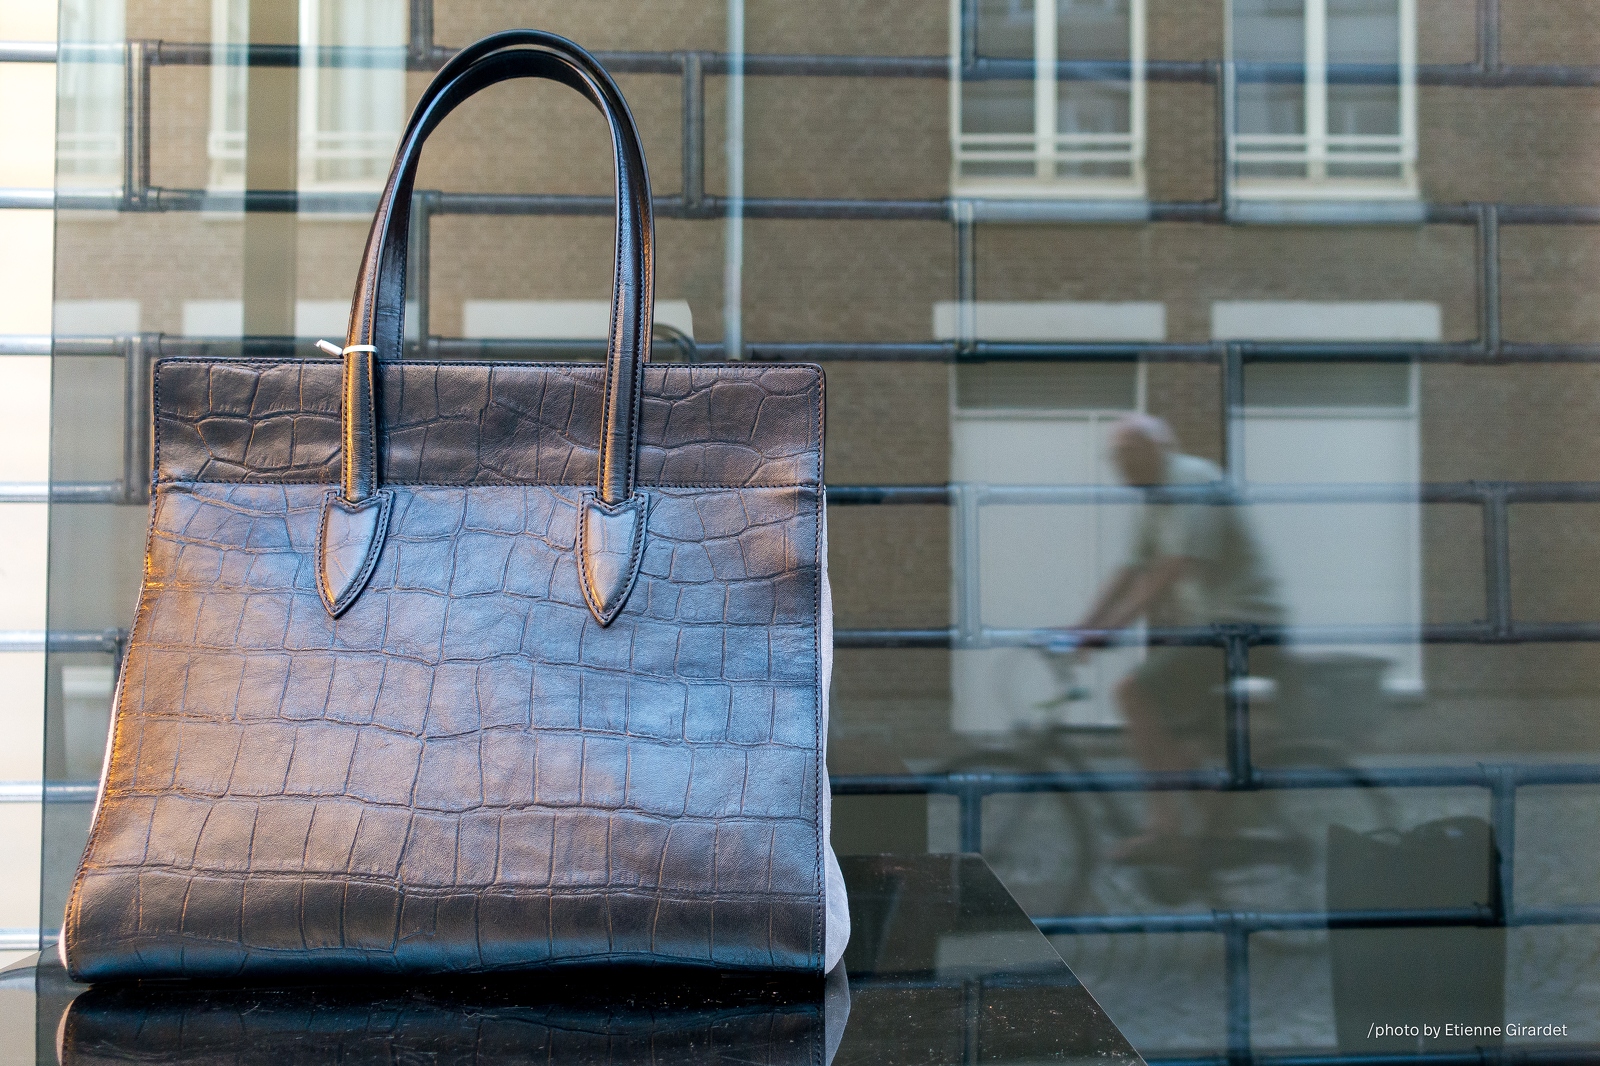 201508_21_DSC05069-PS-shop-window-leather-handbag-by-E-Girardet.jpg